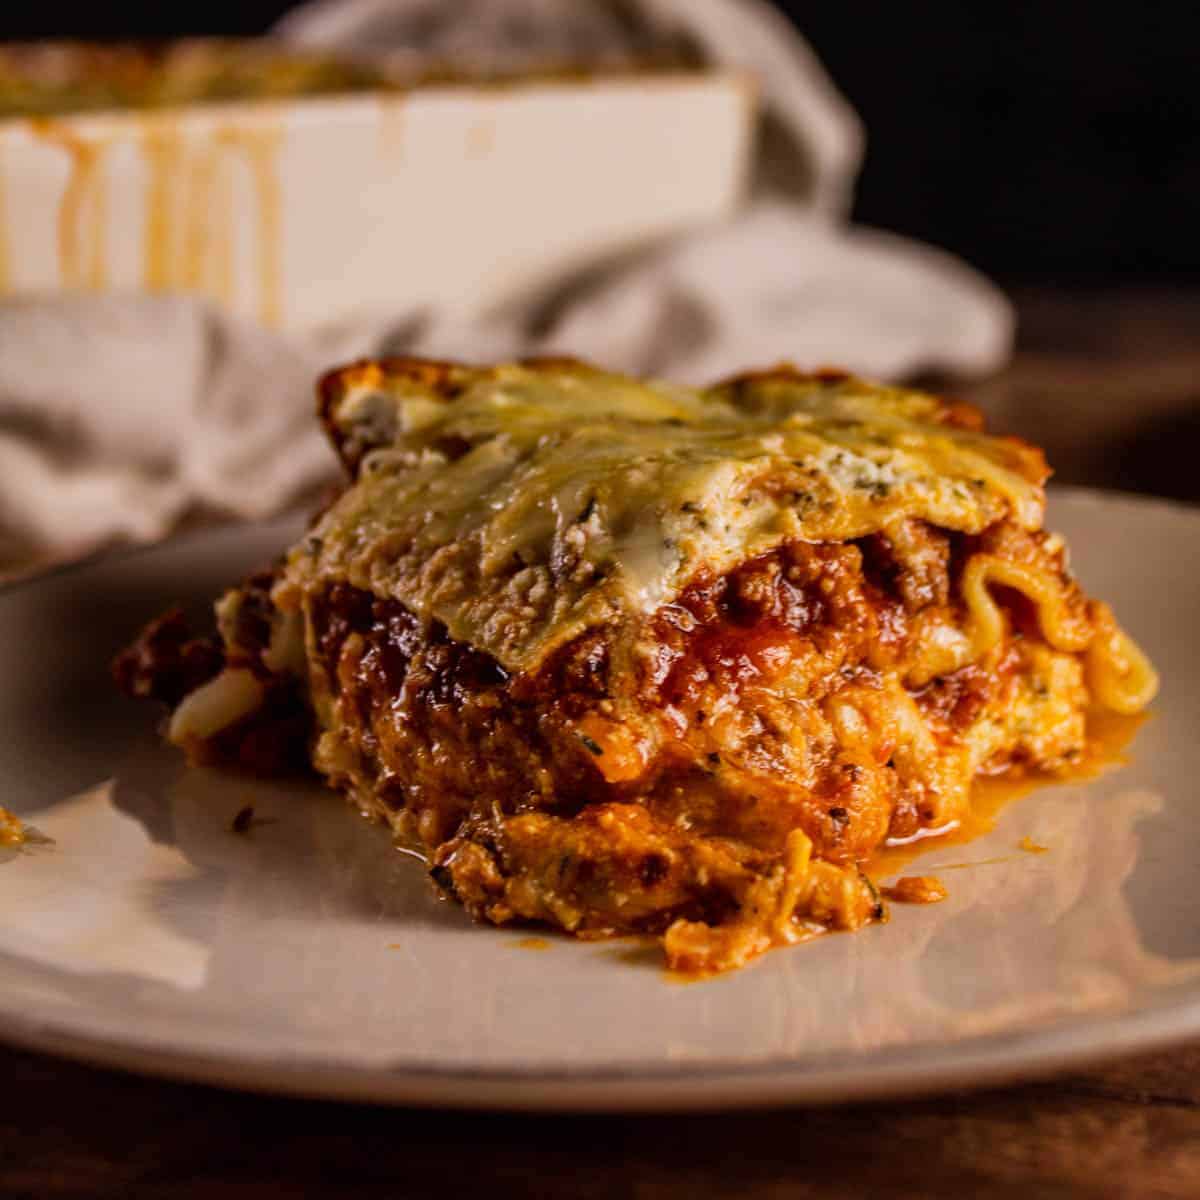 Classic Italian Lasagna with Ricotta Cheese - Saporito Kitchen